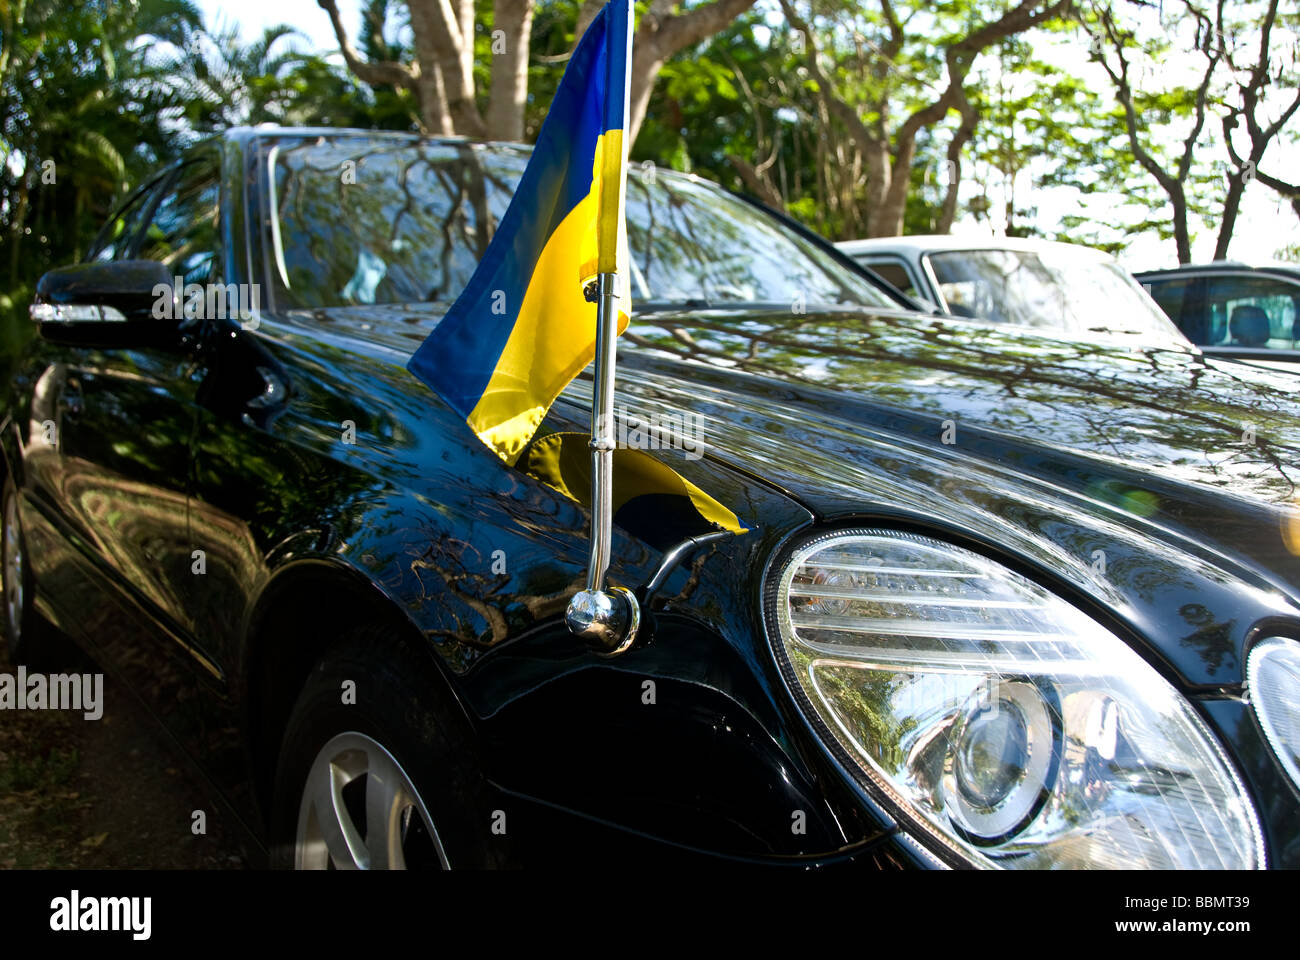 a Ukrainian diplomatic car in Cuba Stock Photo